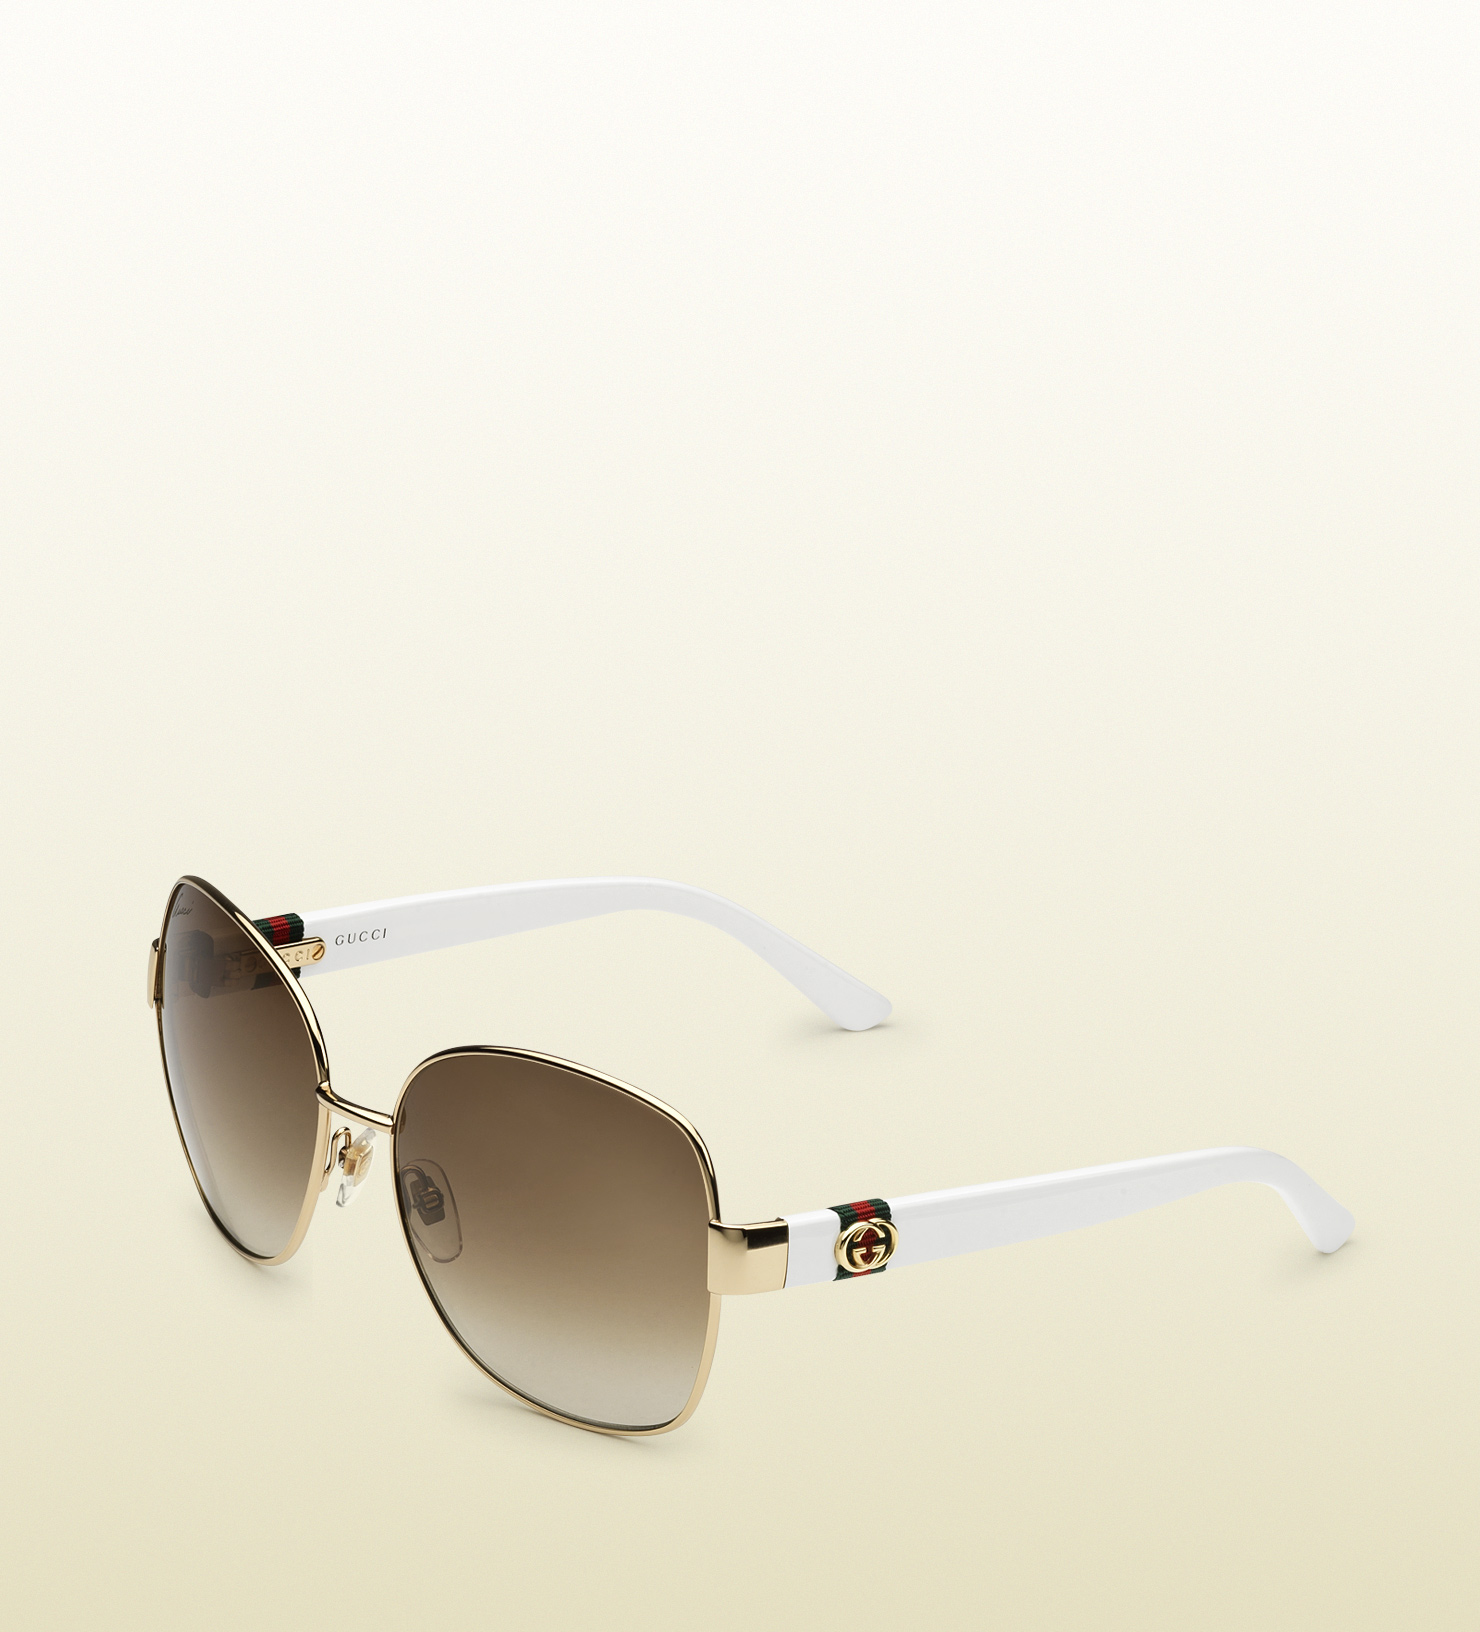 Gucci Gold Square Sunglasses in 